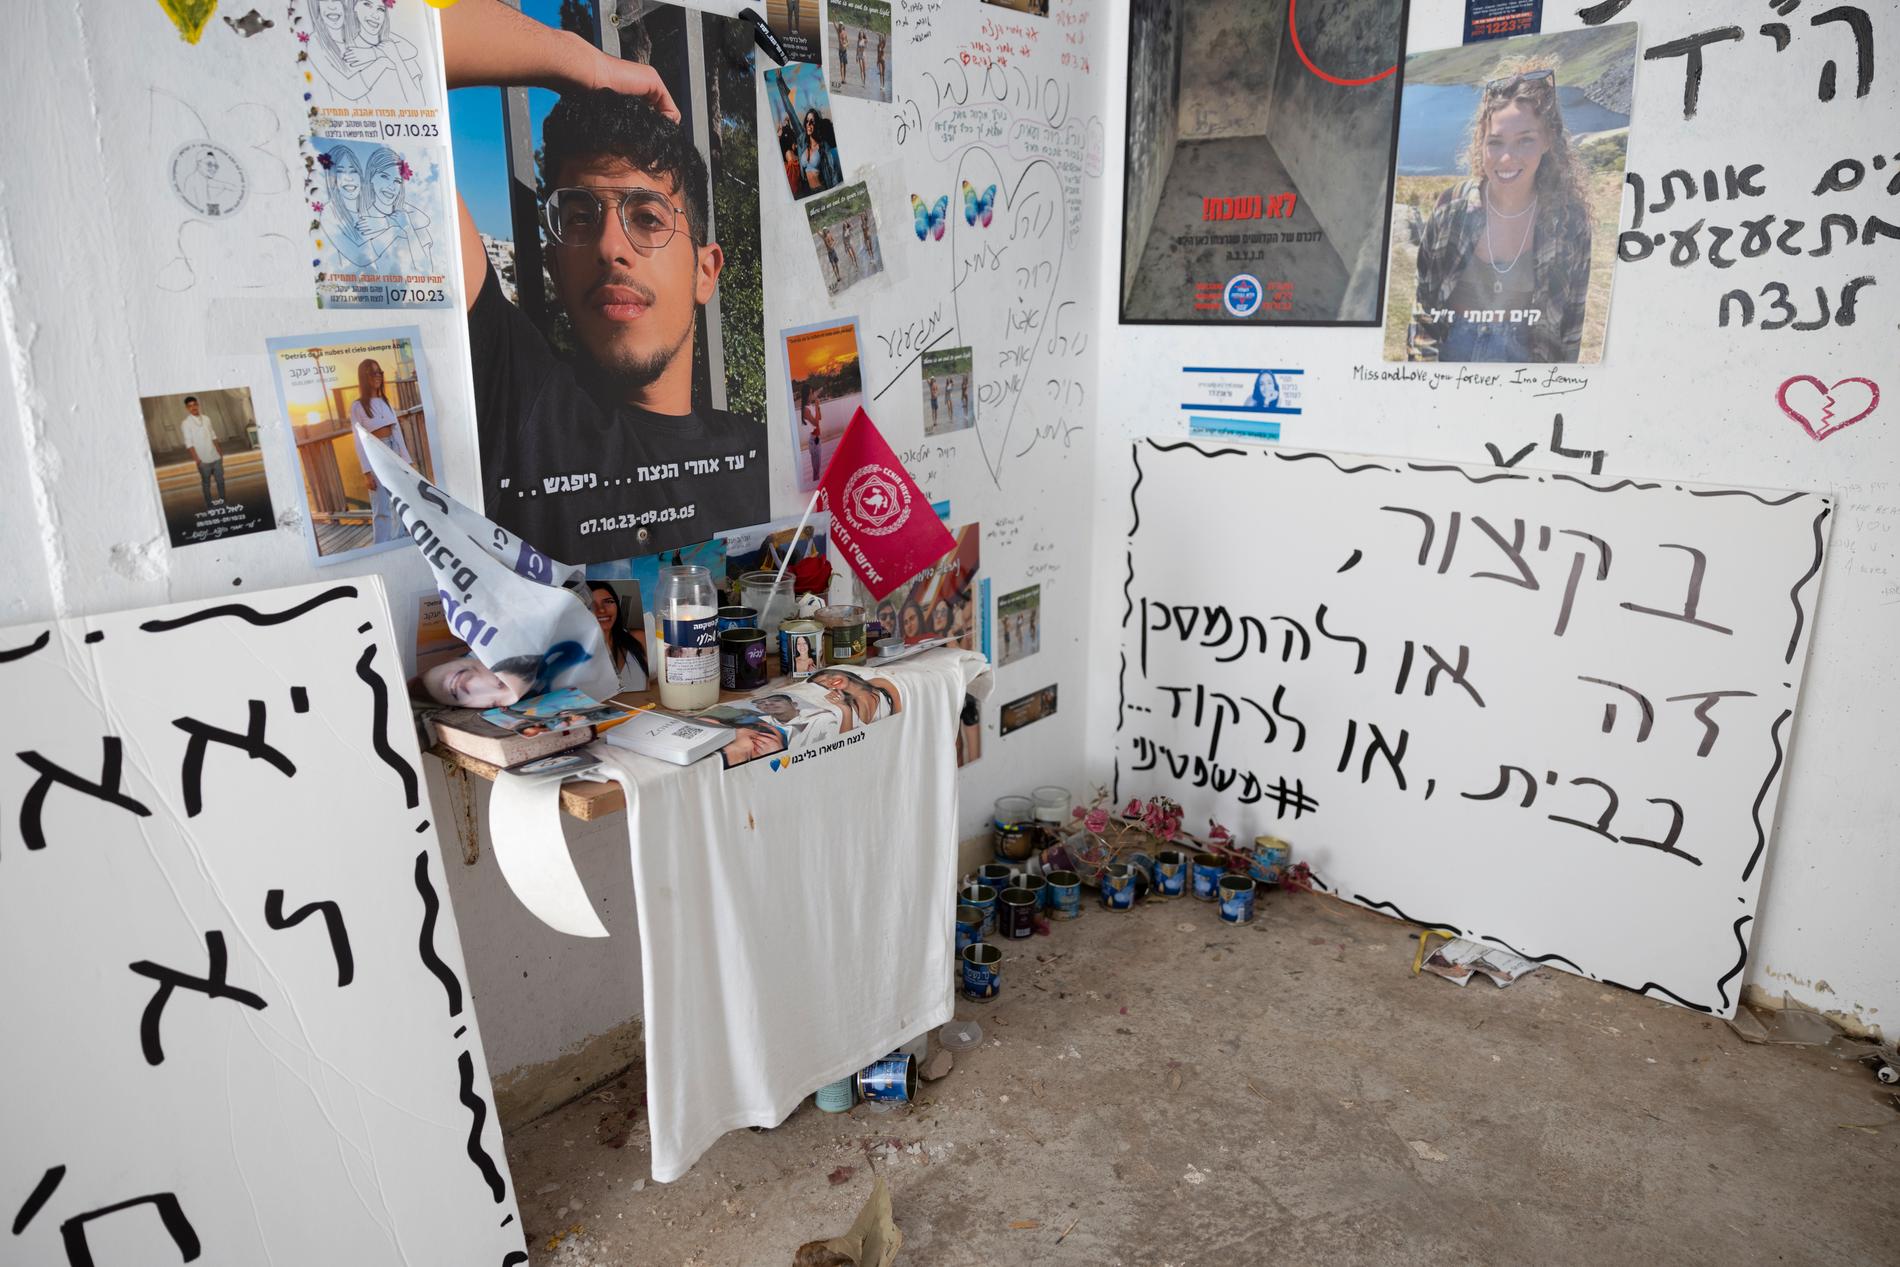 I bombrummet vid busshållsplatsen sökte många ungdomar skydd när Hamaskrigare attackerade området. De allra flesta avrättades. 